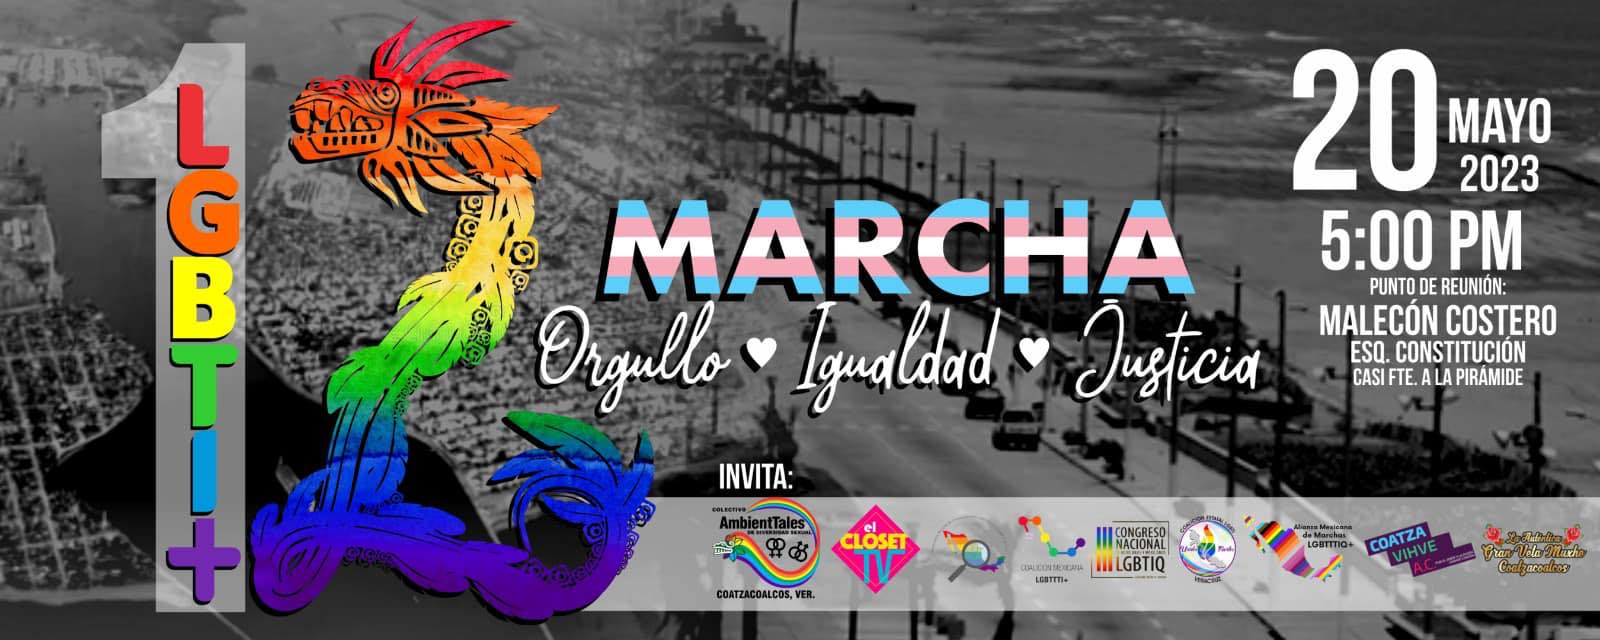 Marcha de Orgullo LGBTTTI CoatzacoalcosPhoto 1 of 2